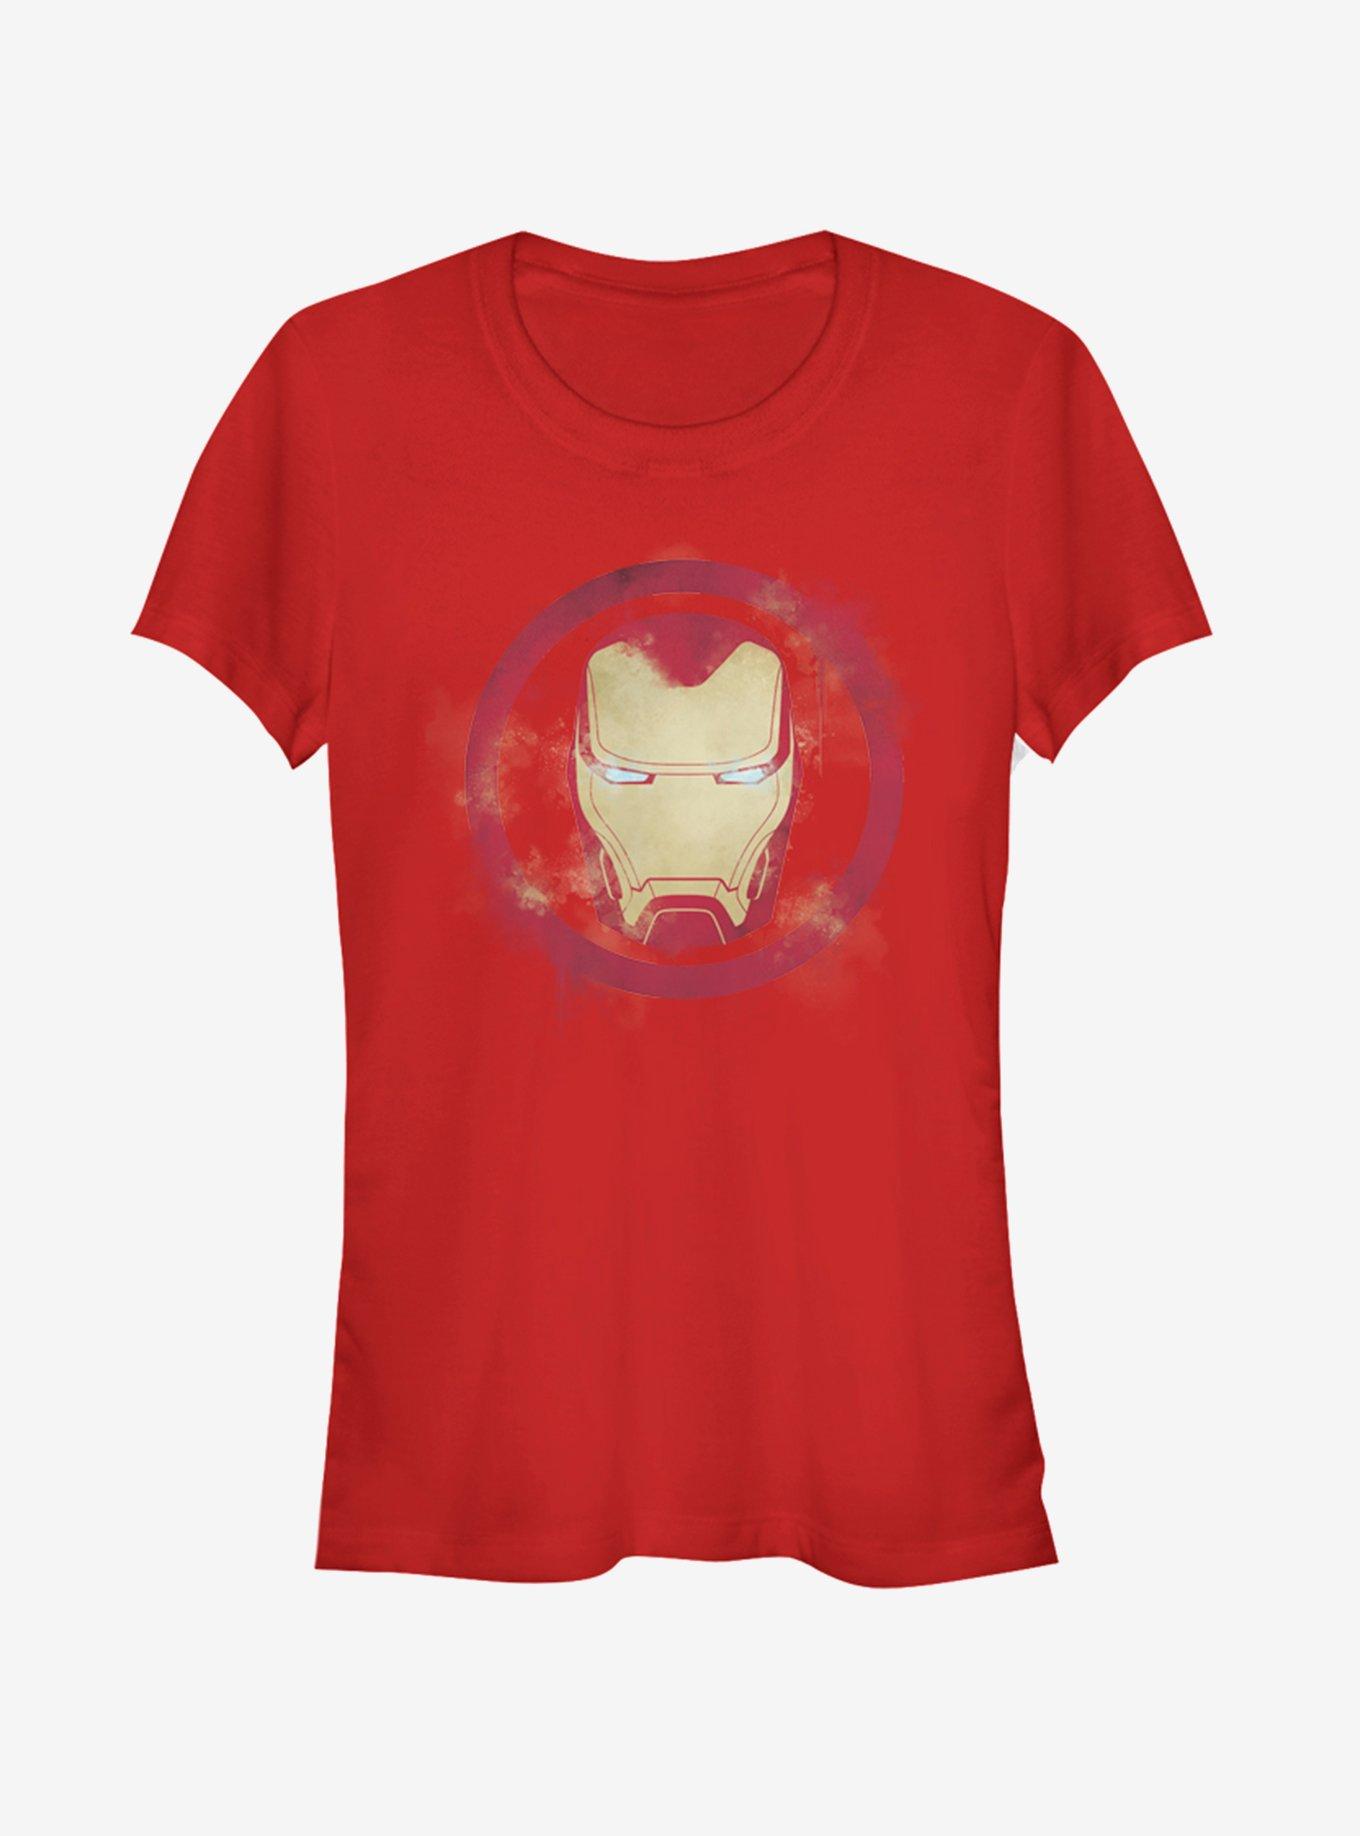 Marvel Avengers: Endgame Iron Man Spray Logo Girls Red T-Shirt, RED, hi-res